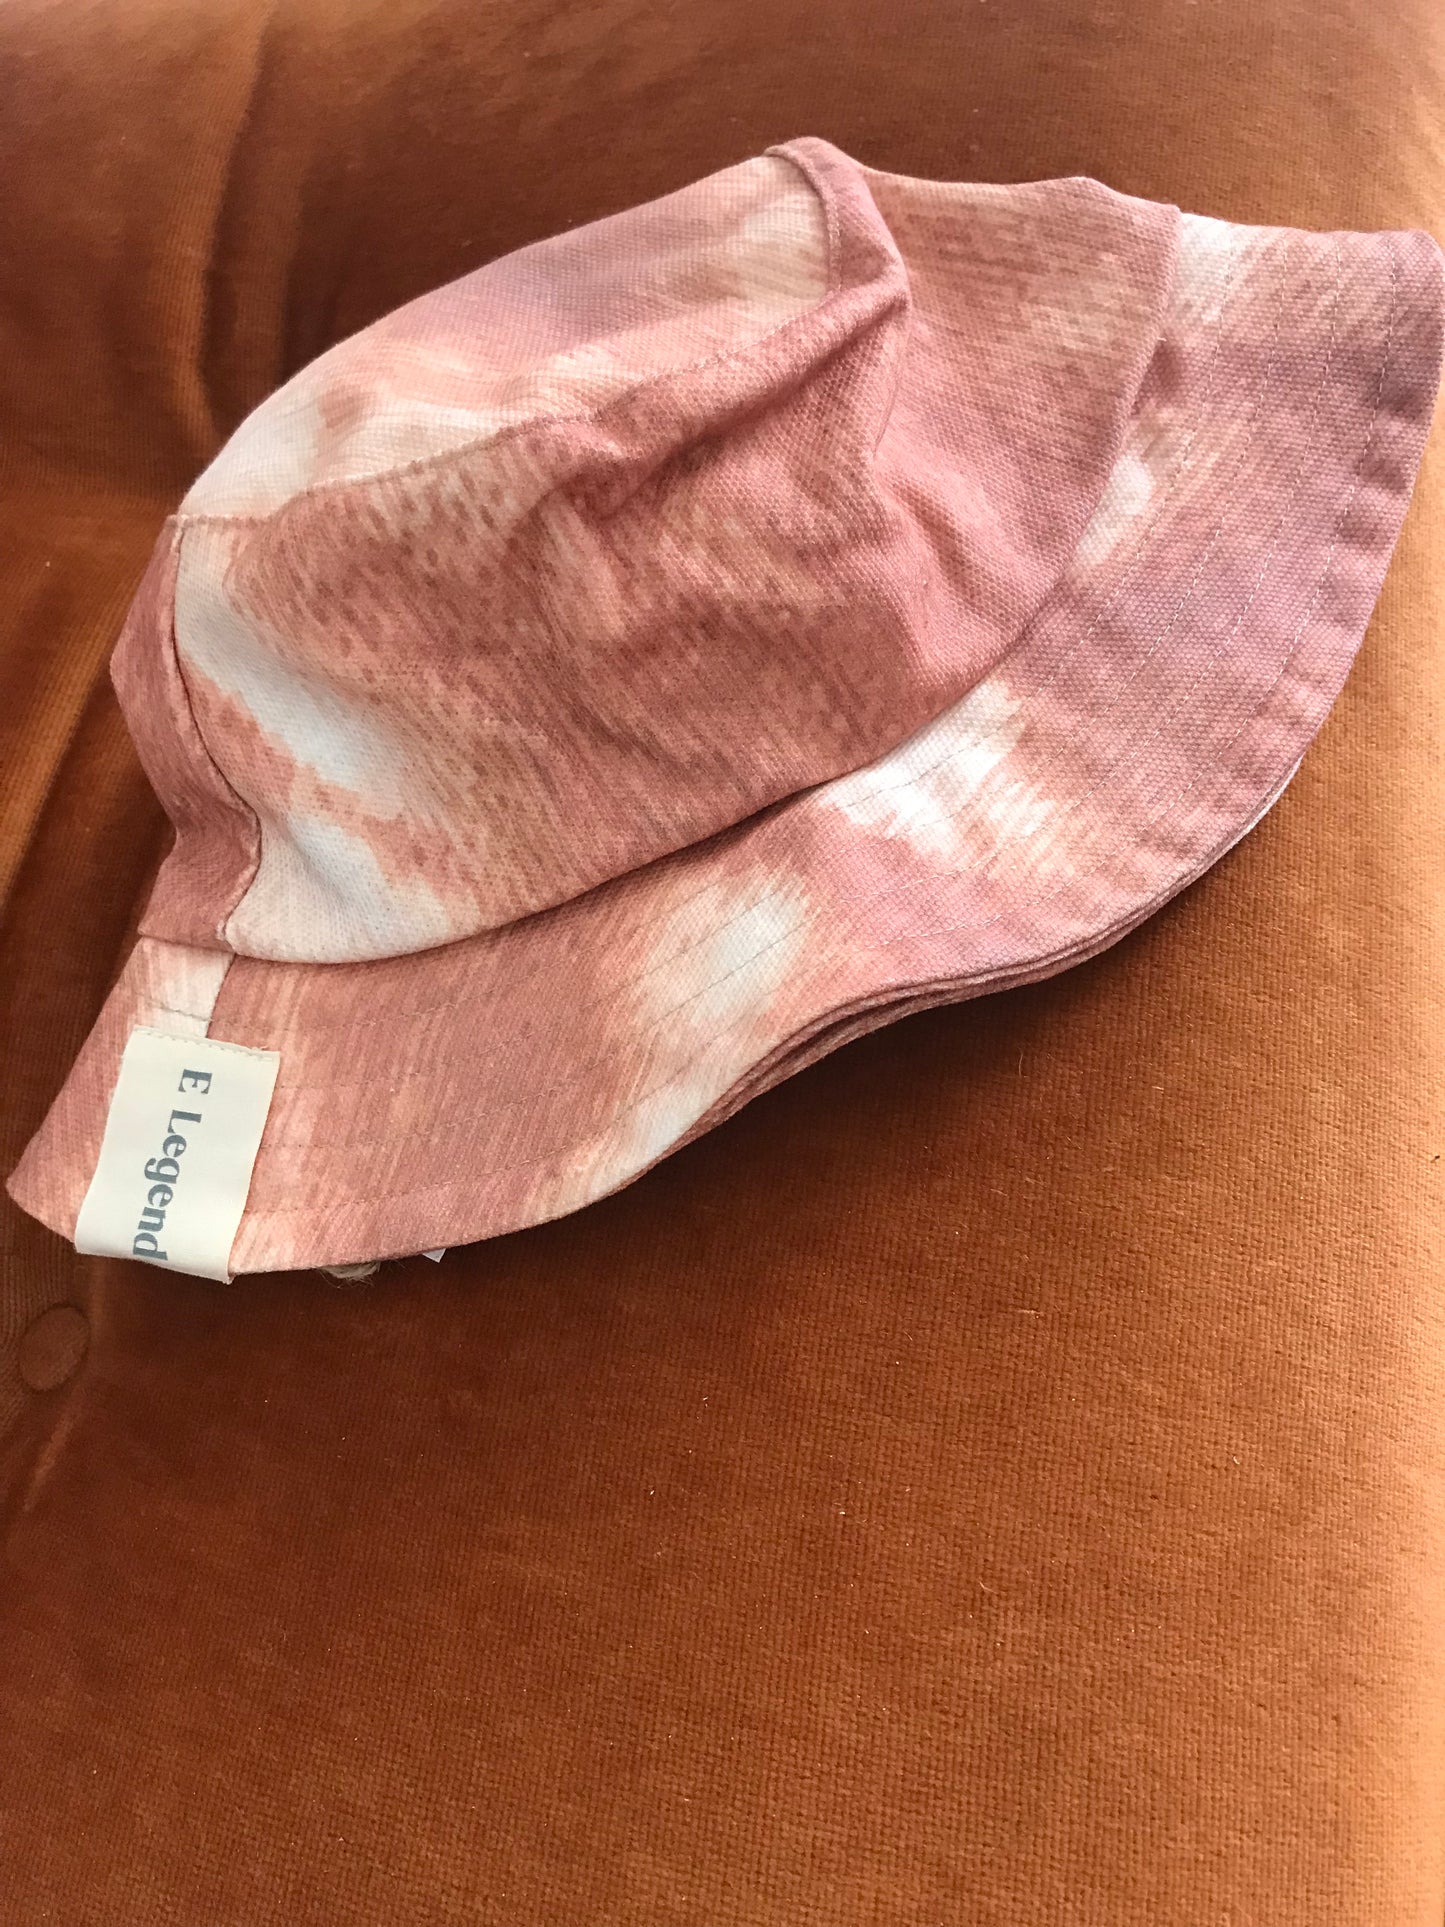 New hat Terracota Tie Dye